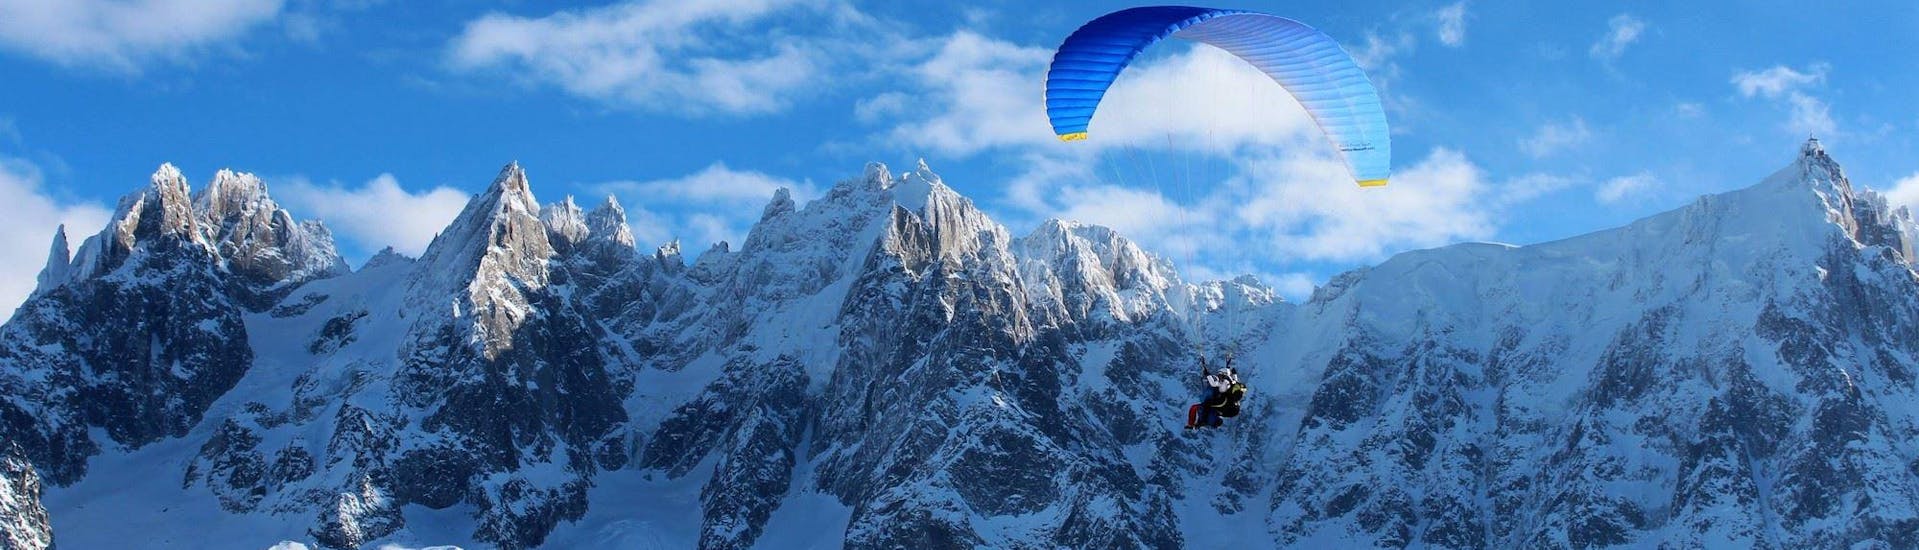 Acrobatisch tandemparagliden in Chamonix (vanaf 13 j.) - Plan de l'Aiguille.